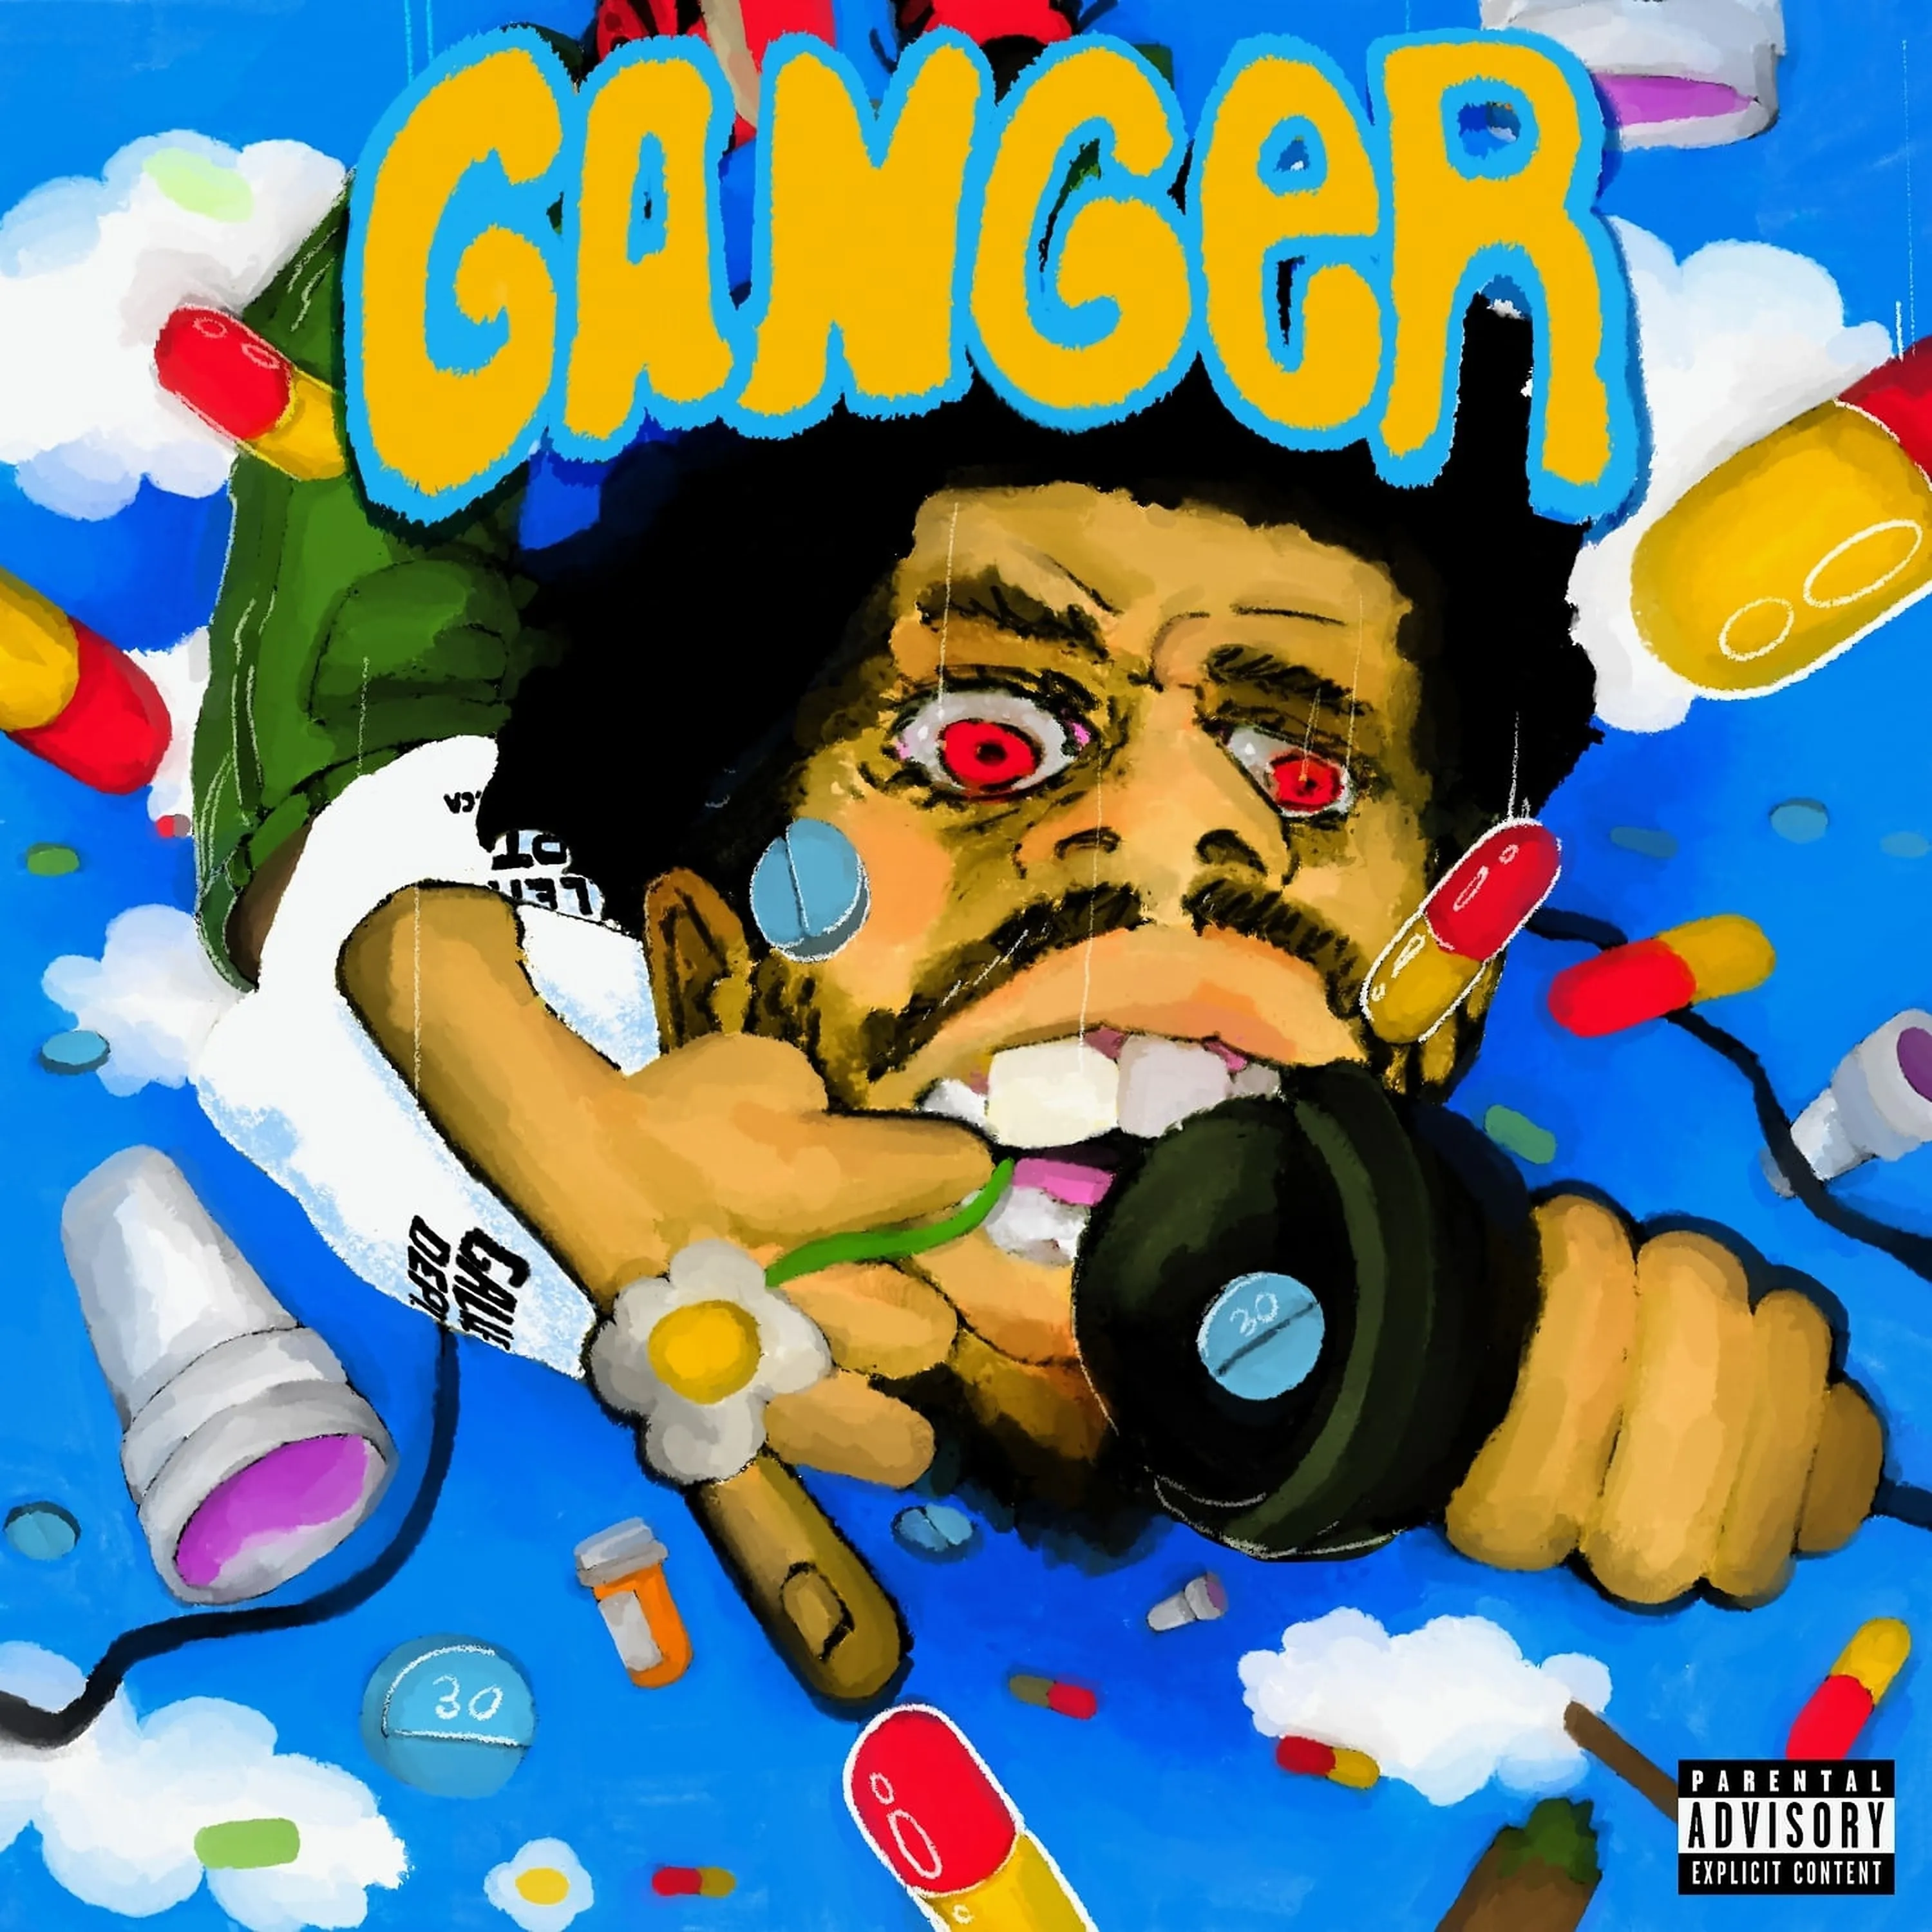 Veeze Ganger cover artwork